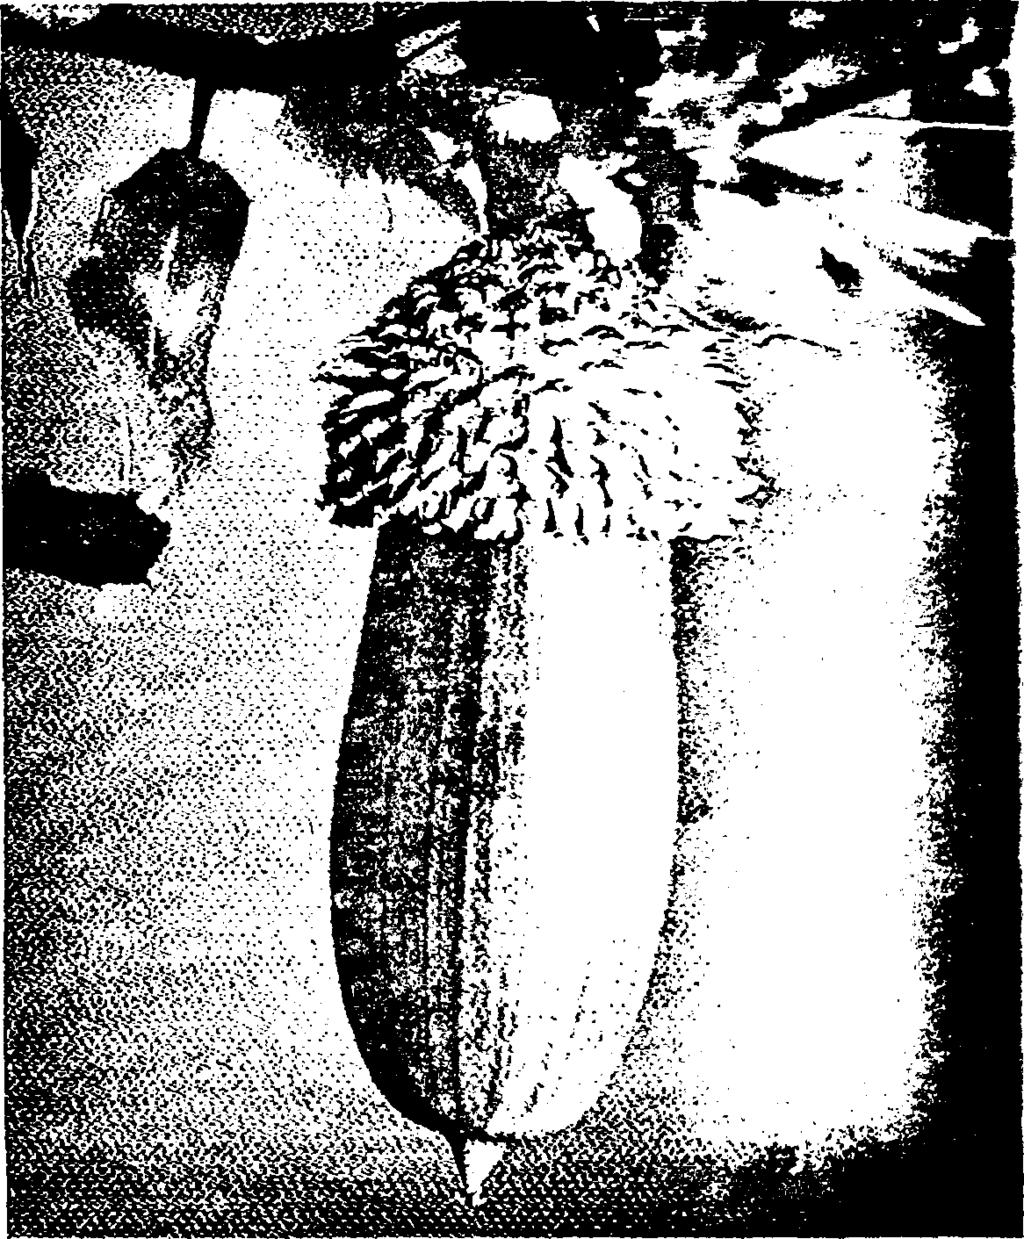 Ο καρπός (βάλανος) του πουρναριού. Πηγή: Αραμπαντζής 1998. Το πουρνάρι ανθίζει την περίοδο Απριλίου - Μαΐου.